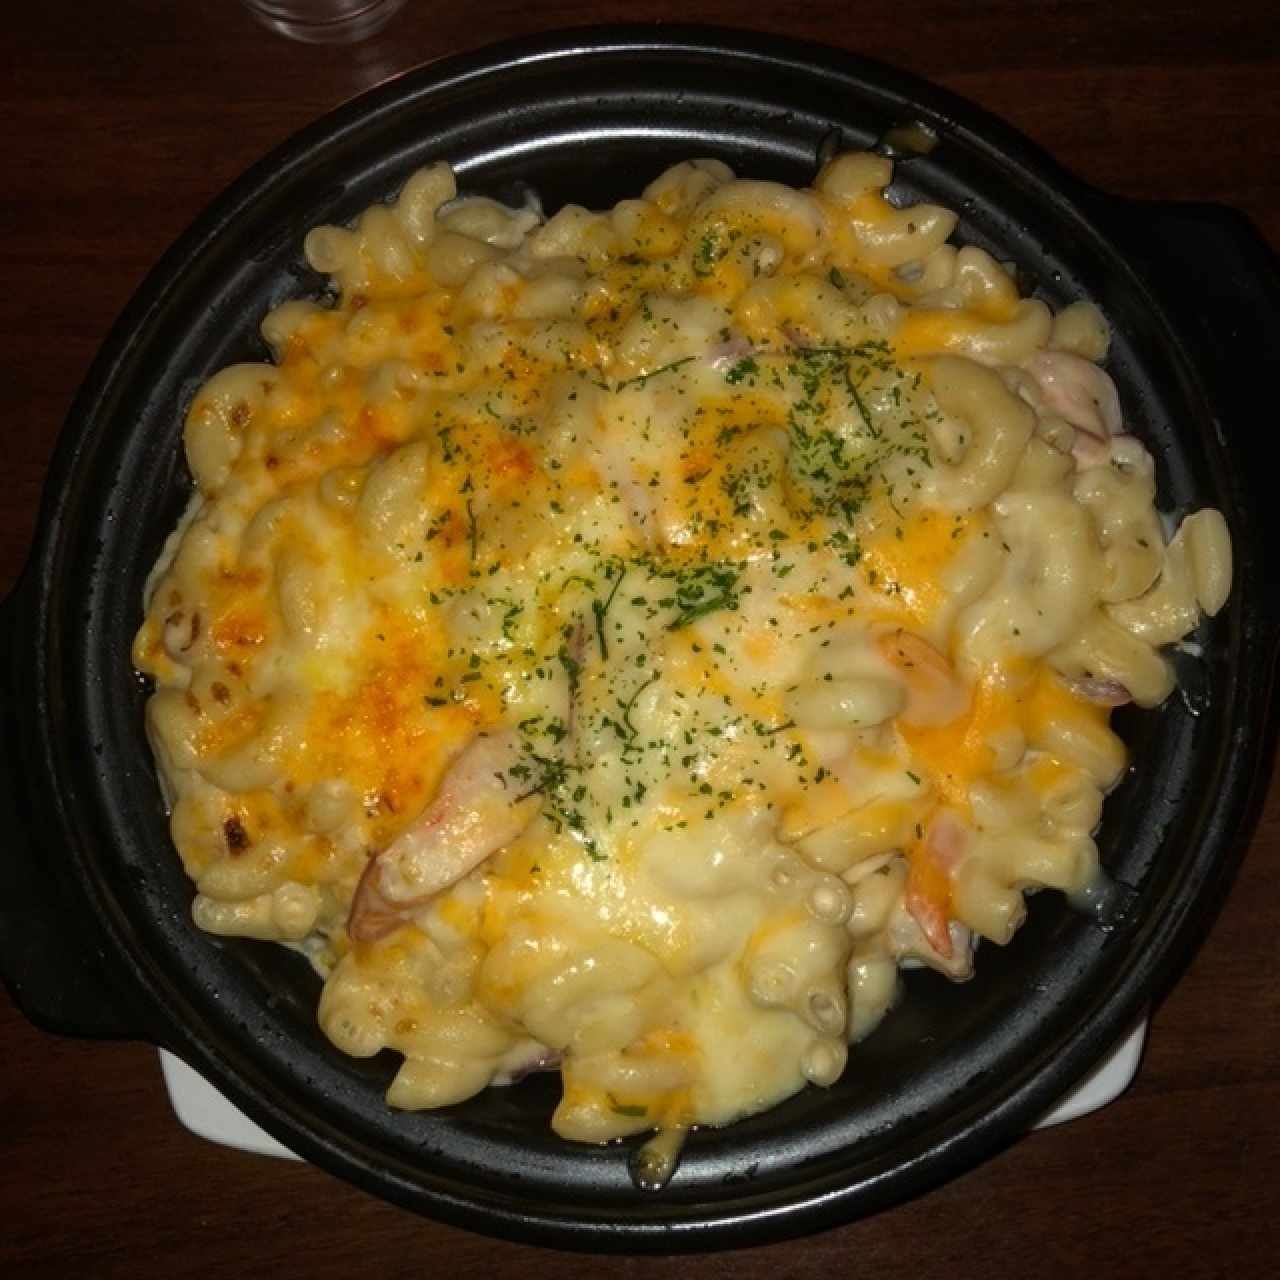 Tántalo Mac & Cheese